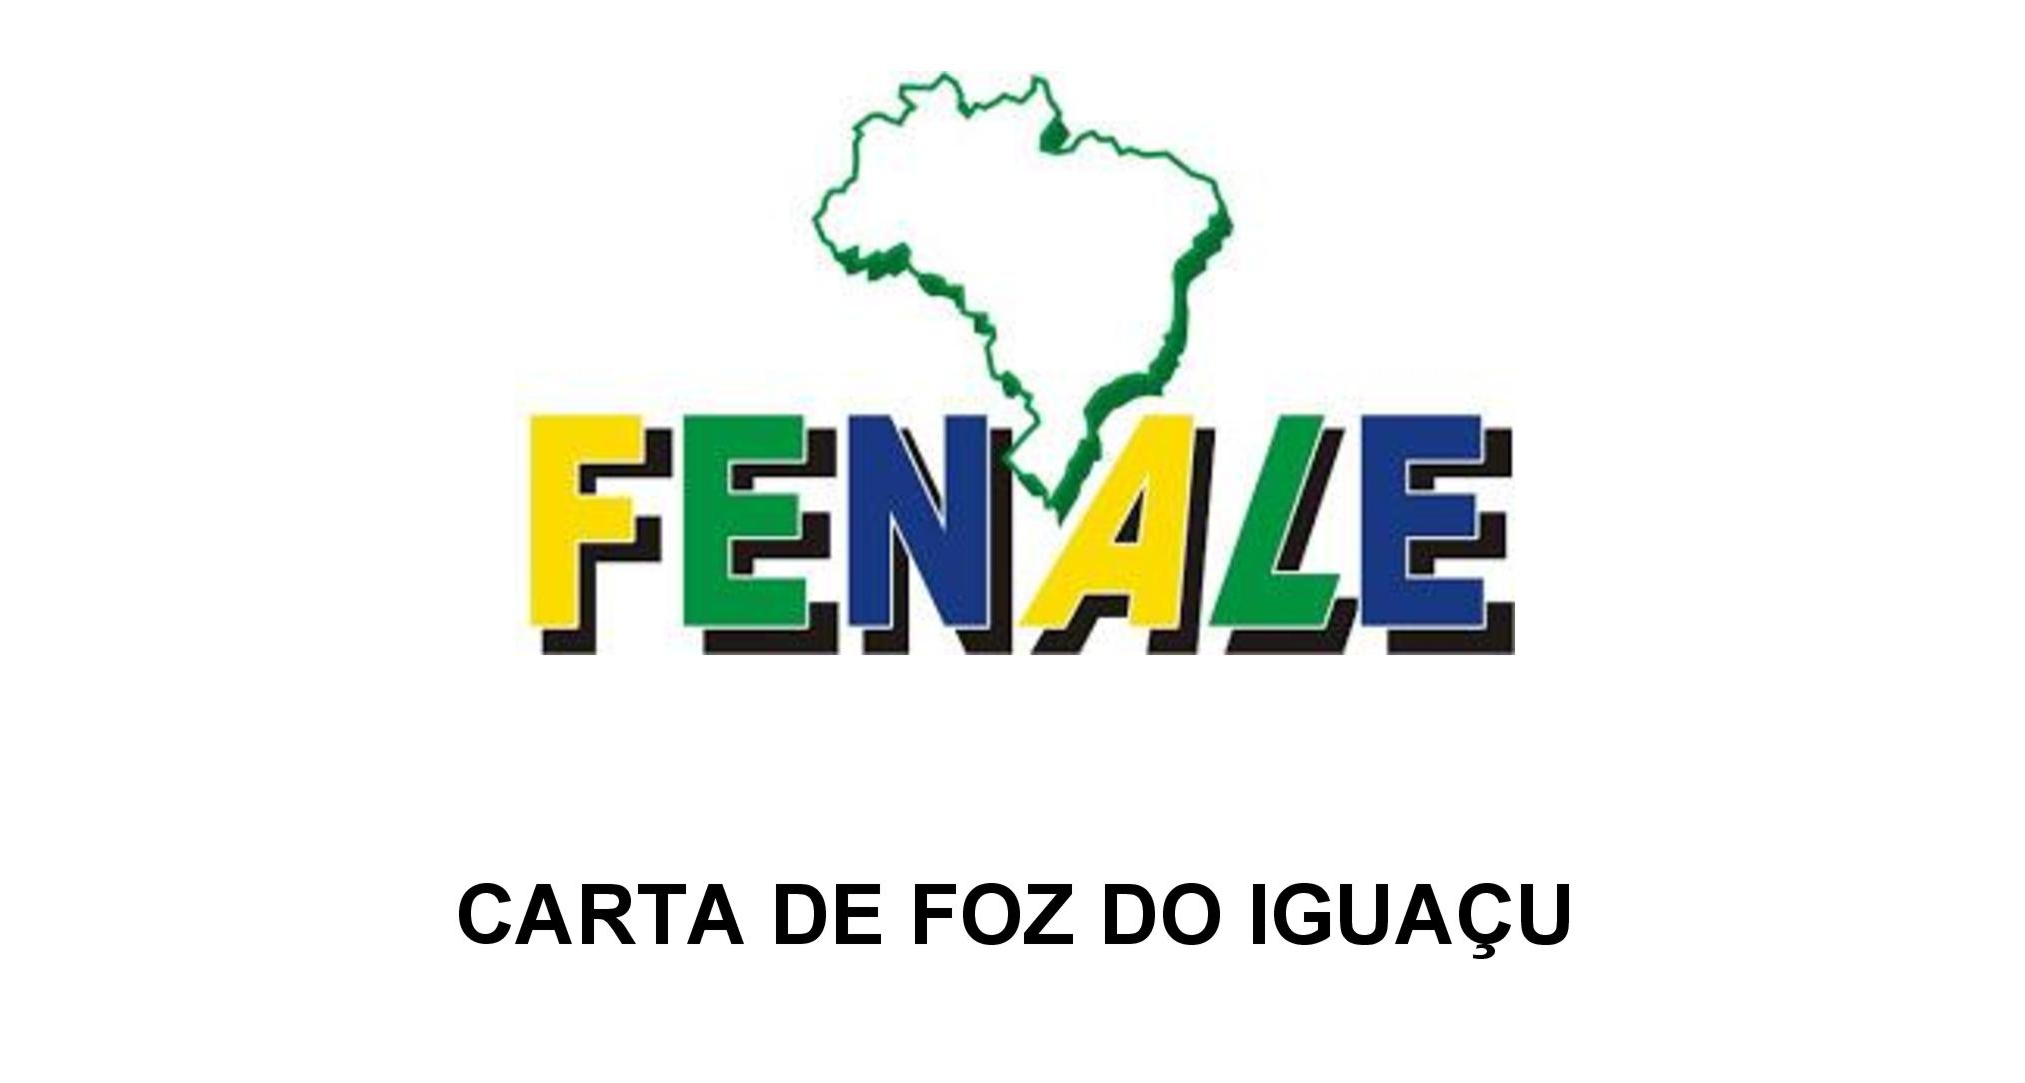 CARTA DE FOZ DO IGUAÇU 06-06-2017